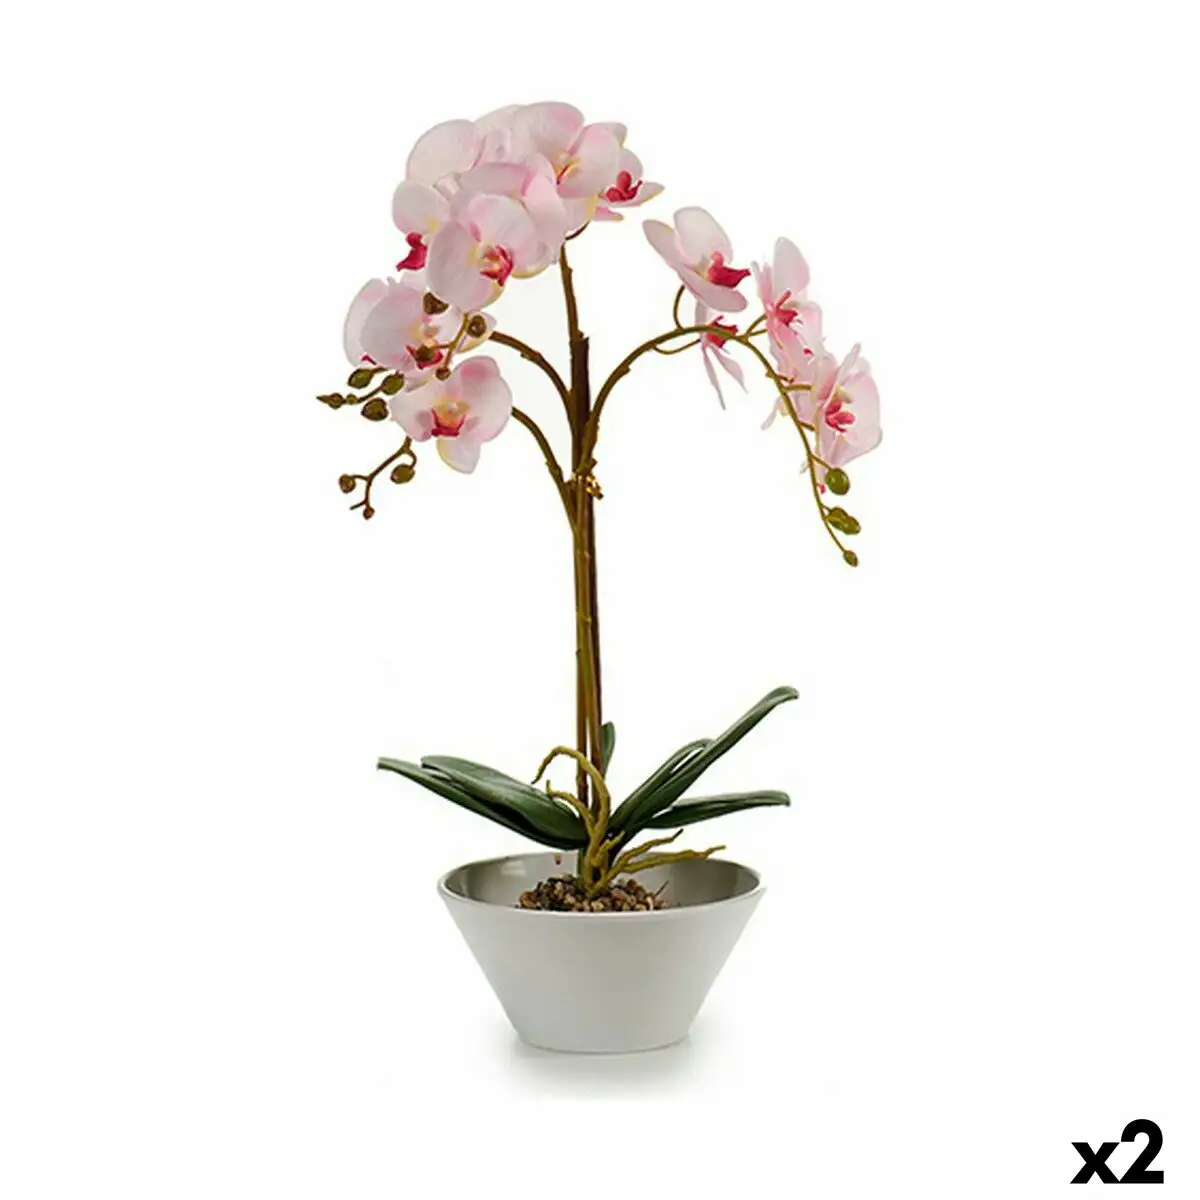 Plante decorative orchidee plastique 20 x 60 x 28 cm 2 unites _6579. DIAYTAR SENEGAL - L'Art de Choisir, l'Art de Vivre. Explorez notre univers de produits soigneusement sélectionnés pour vous offrir une expérience shopping riche et gratifiante.